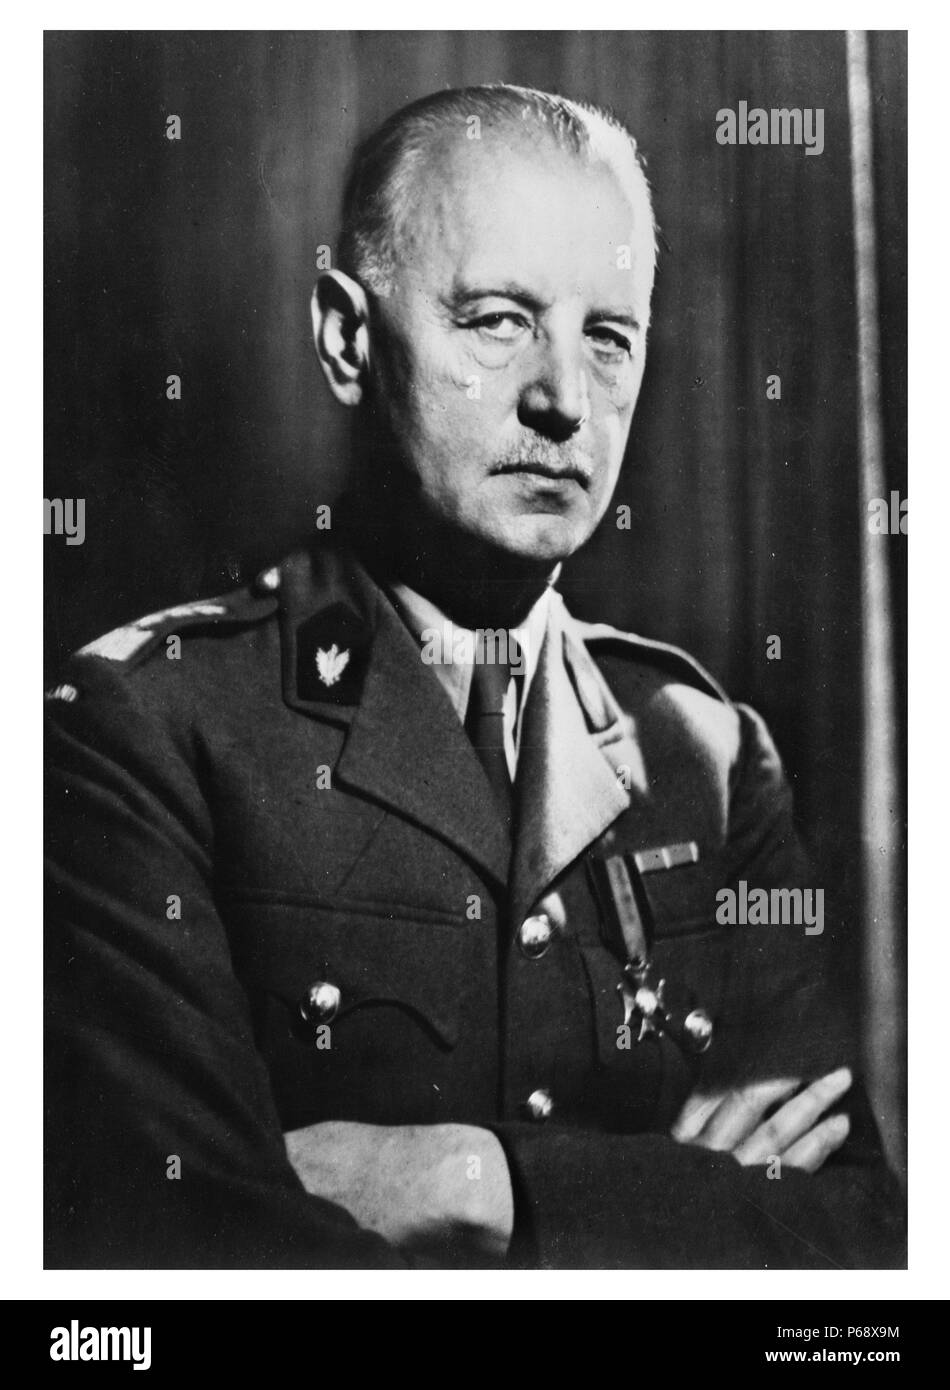 Foto von Wladyslaw Sikorski (1881-1943) war ein polnischer militärischer und politischer Führer. Datiert 1939. Stockfoto